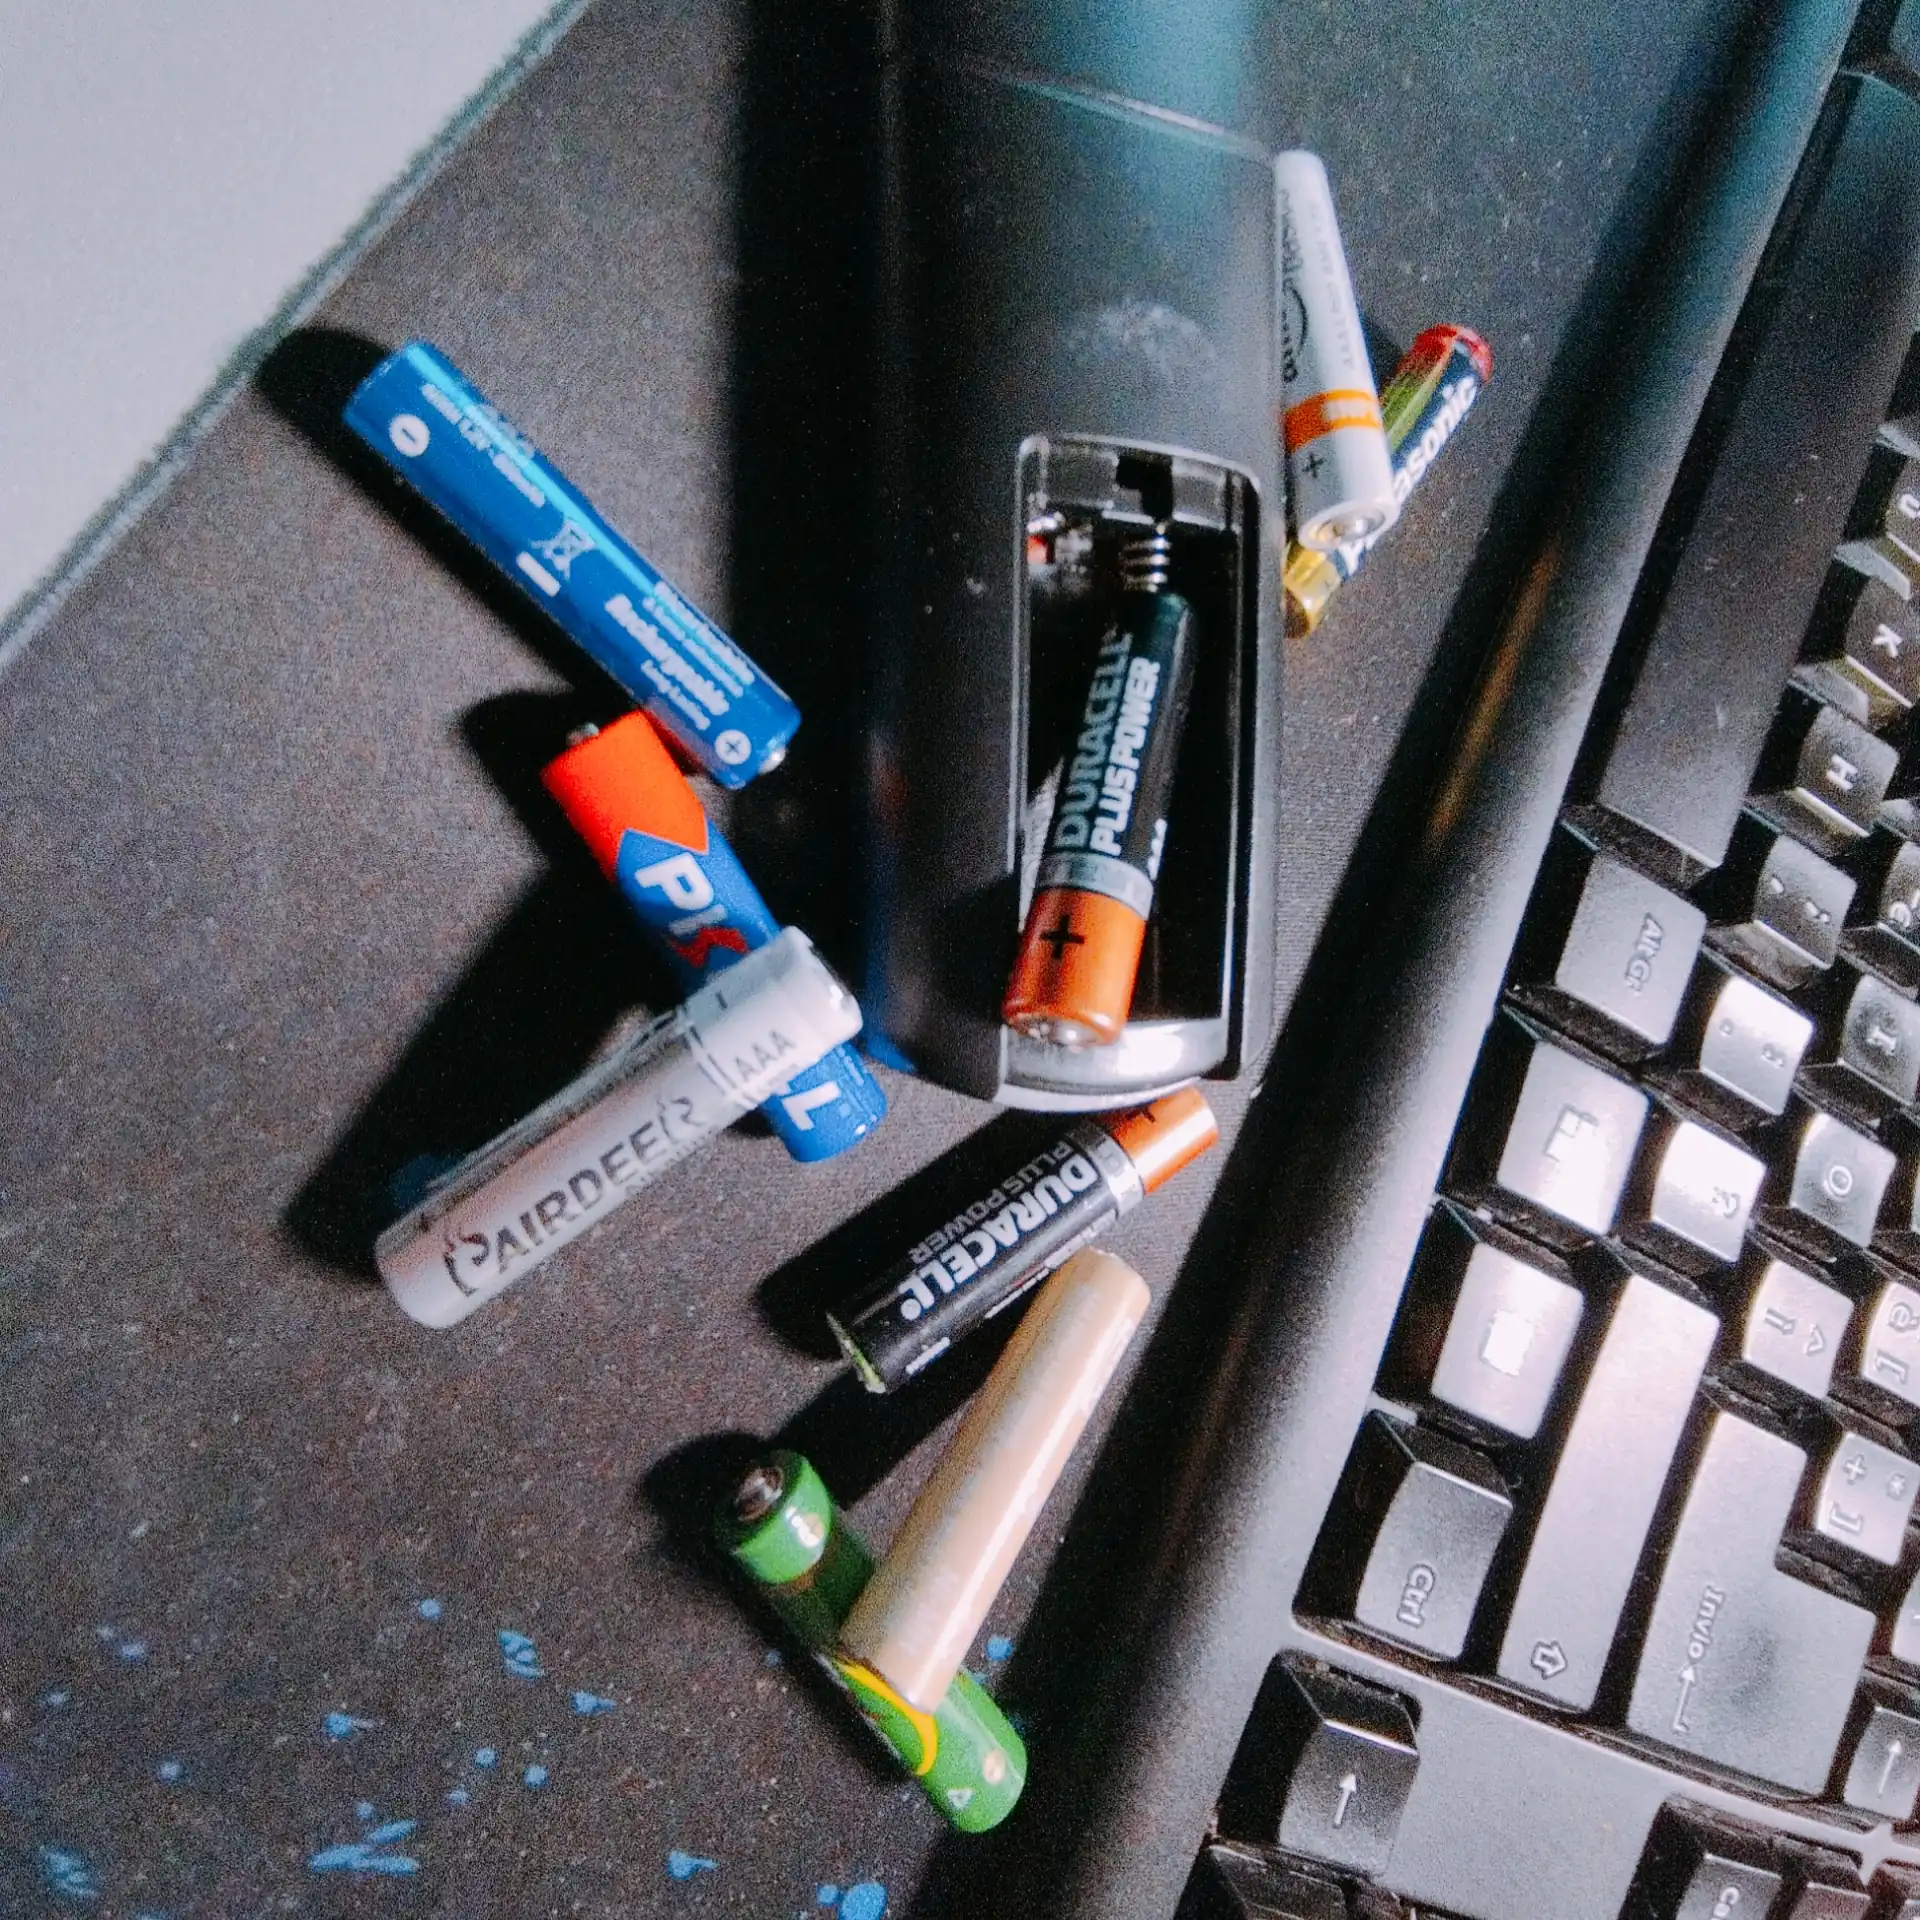 Il telecomando sulla mia scrivania, con il vano batterie aperto, e un sacco di batterie mini-stilo colorate attorno.